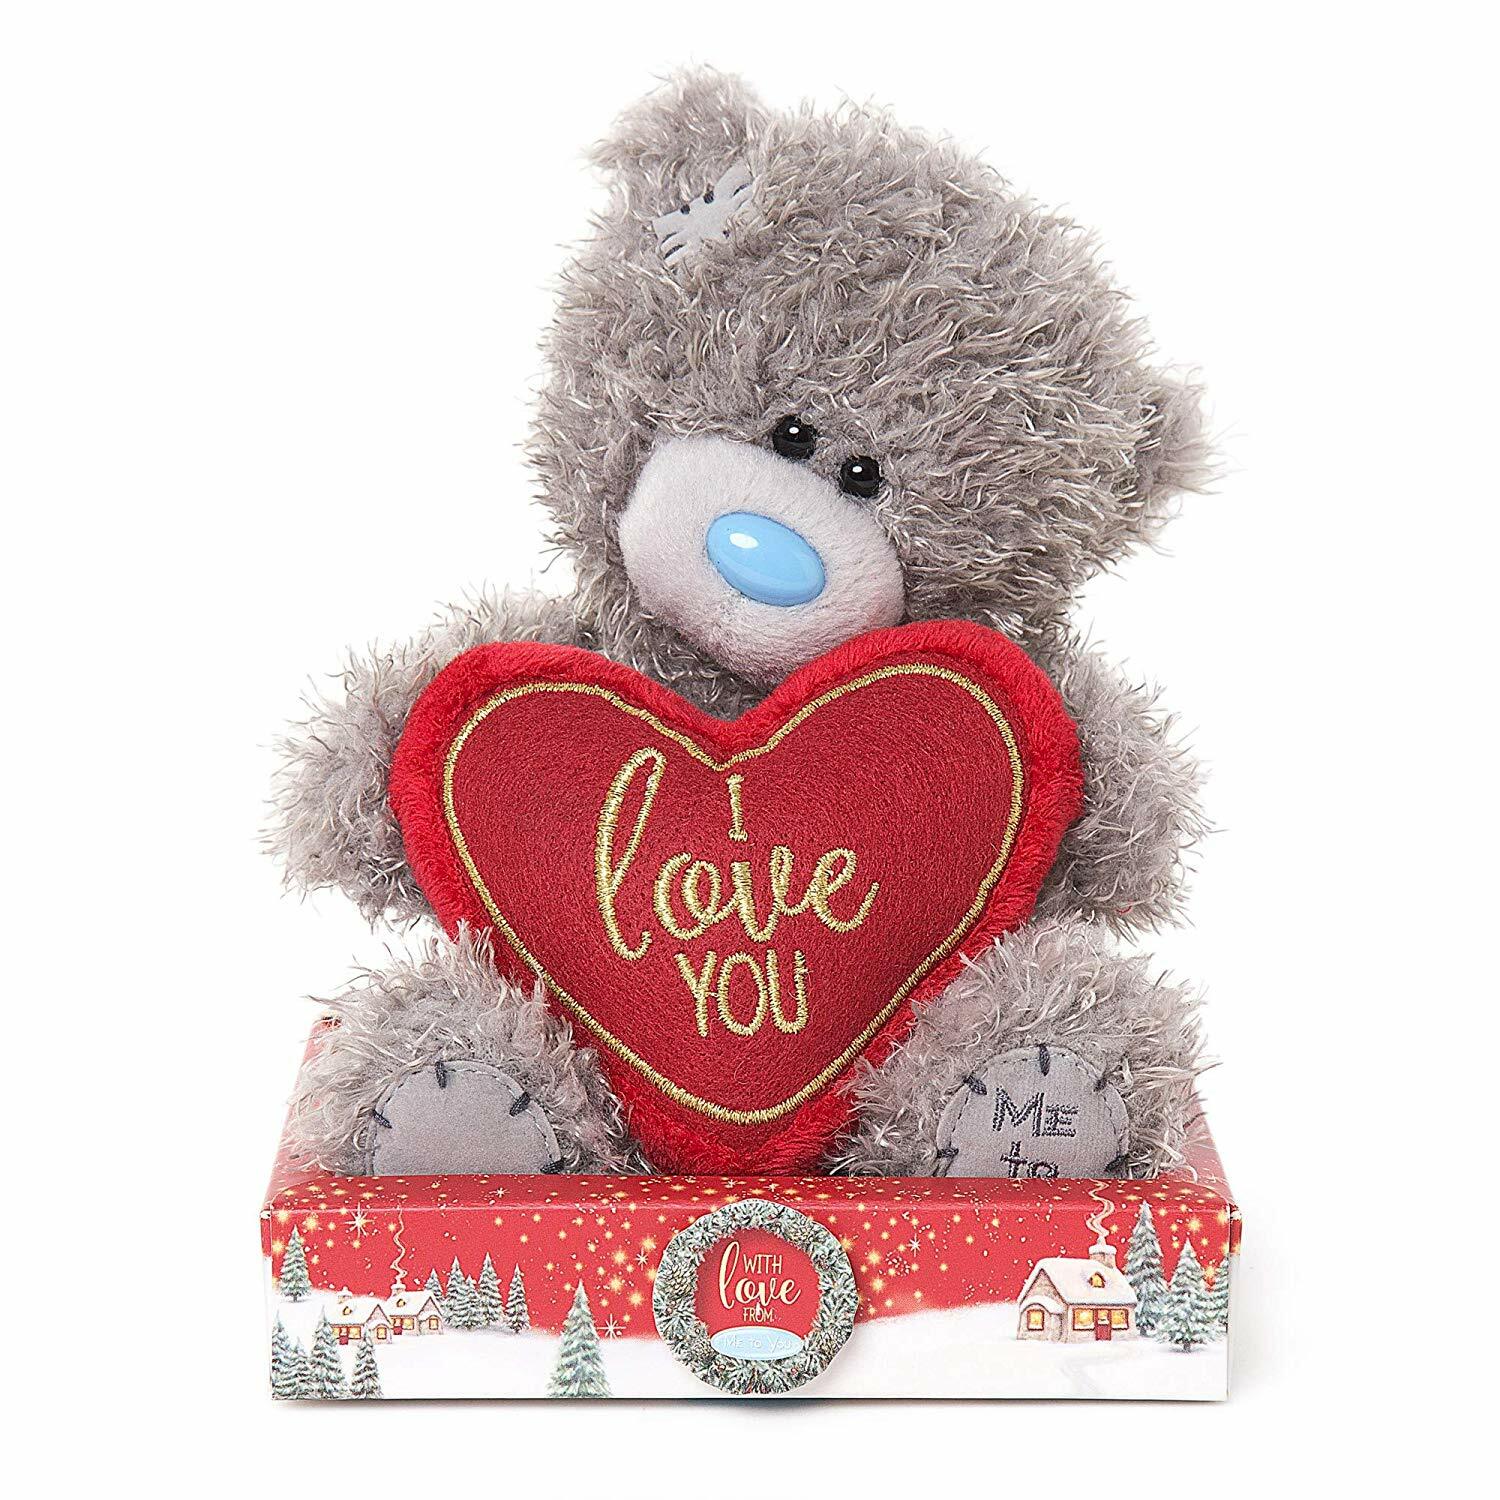 i love you teddy bear